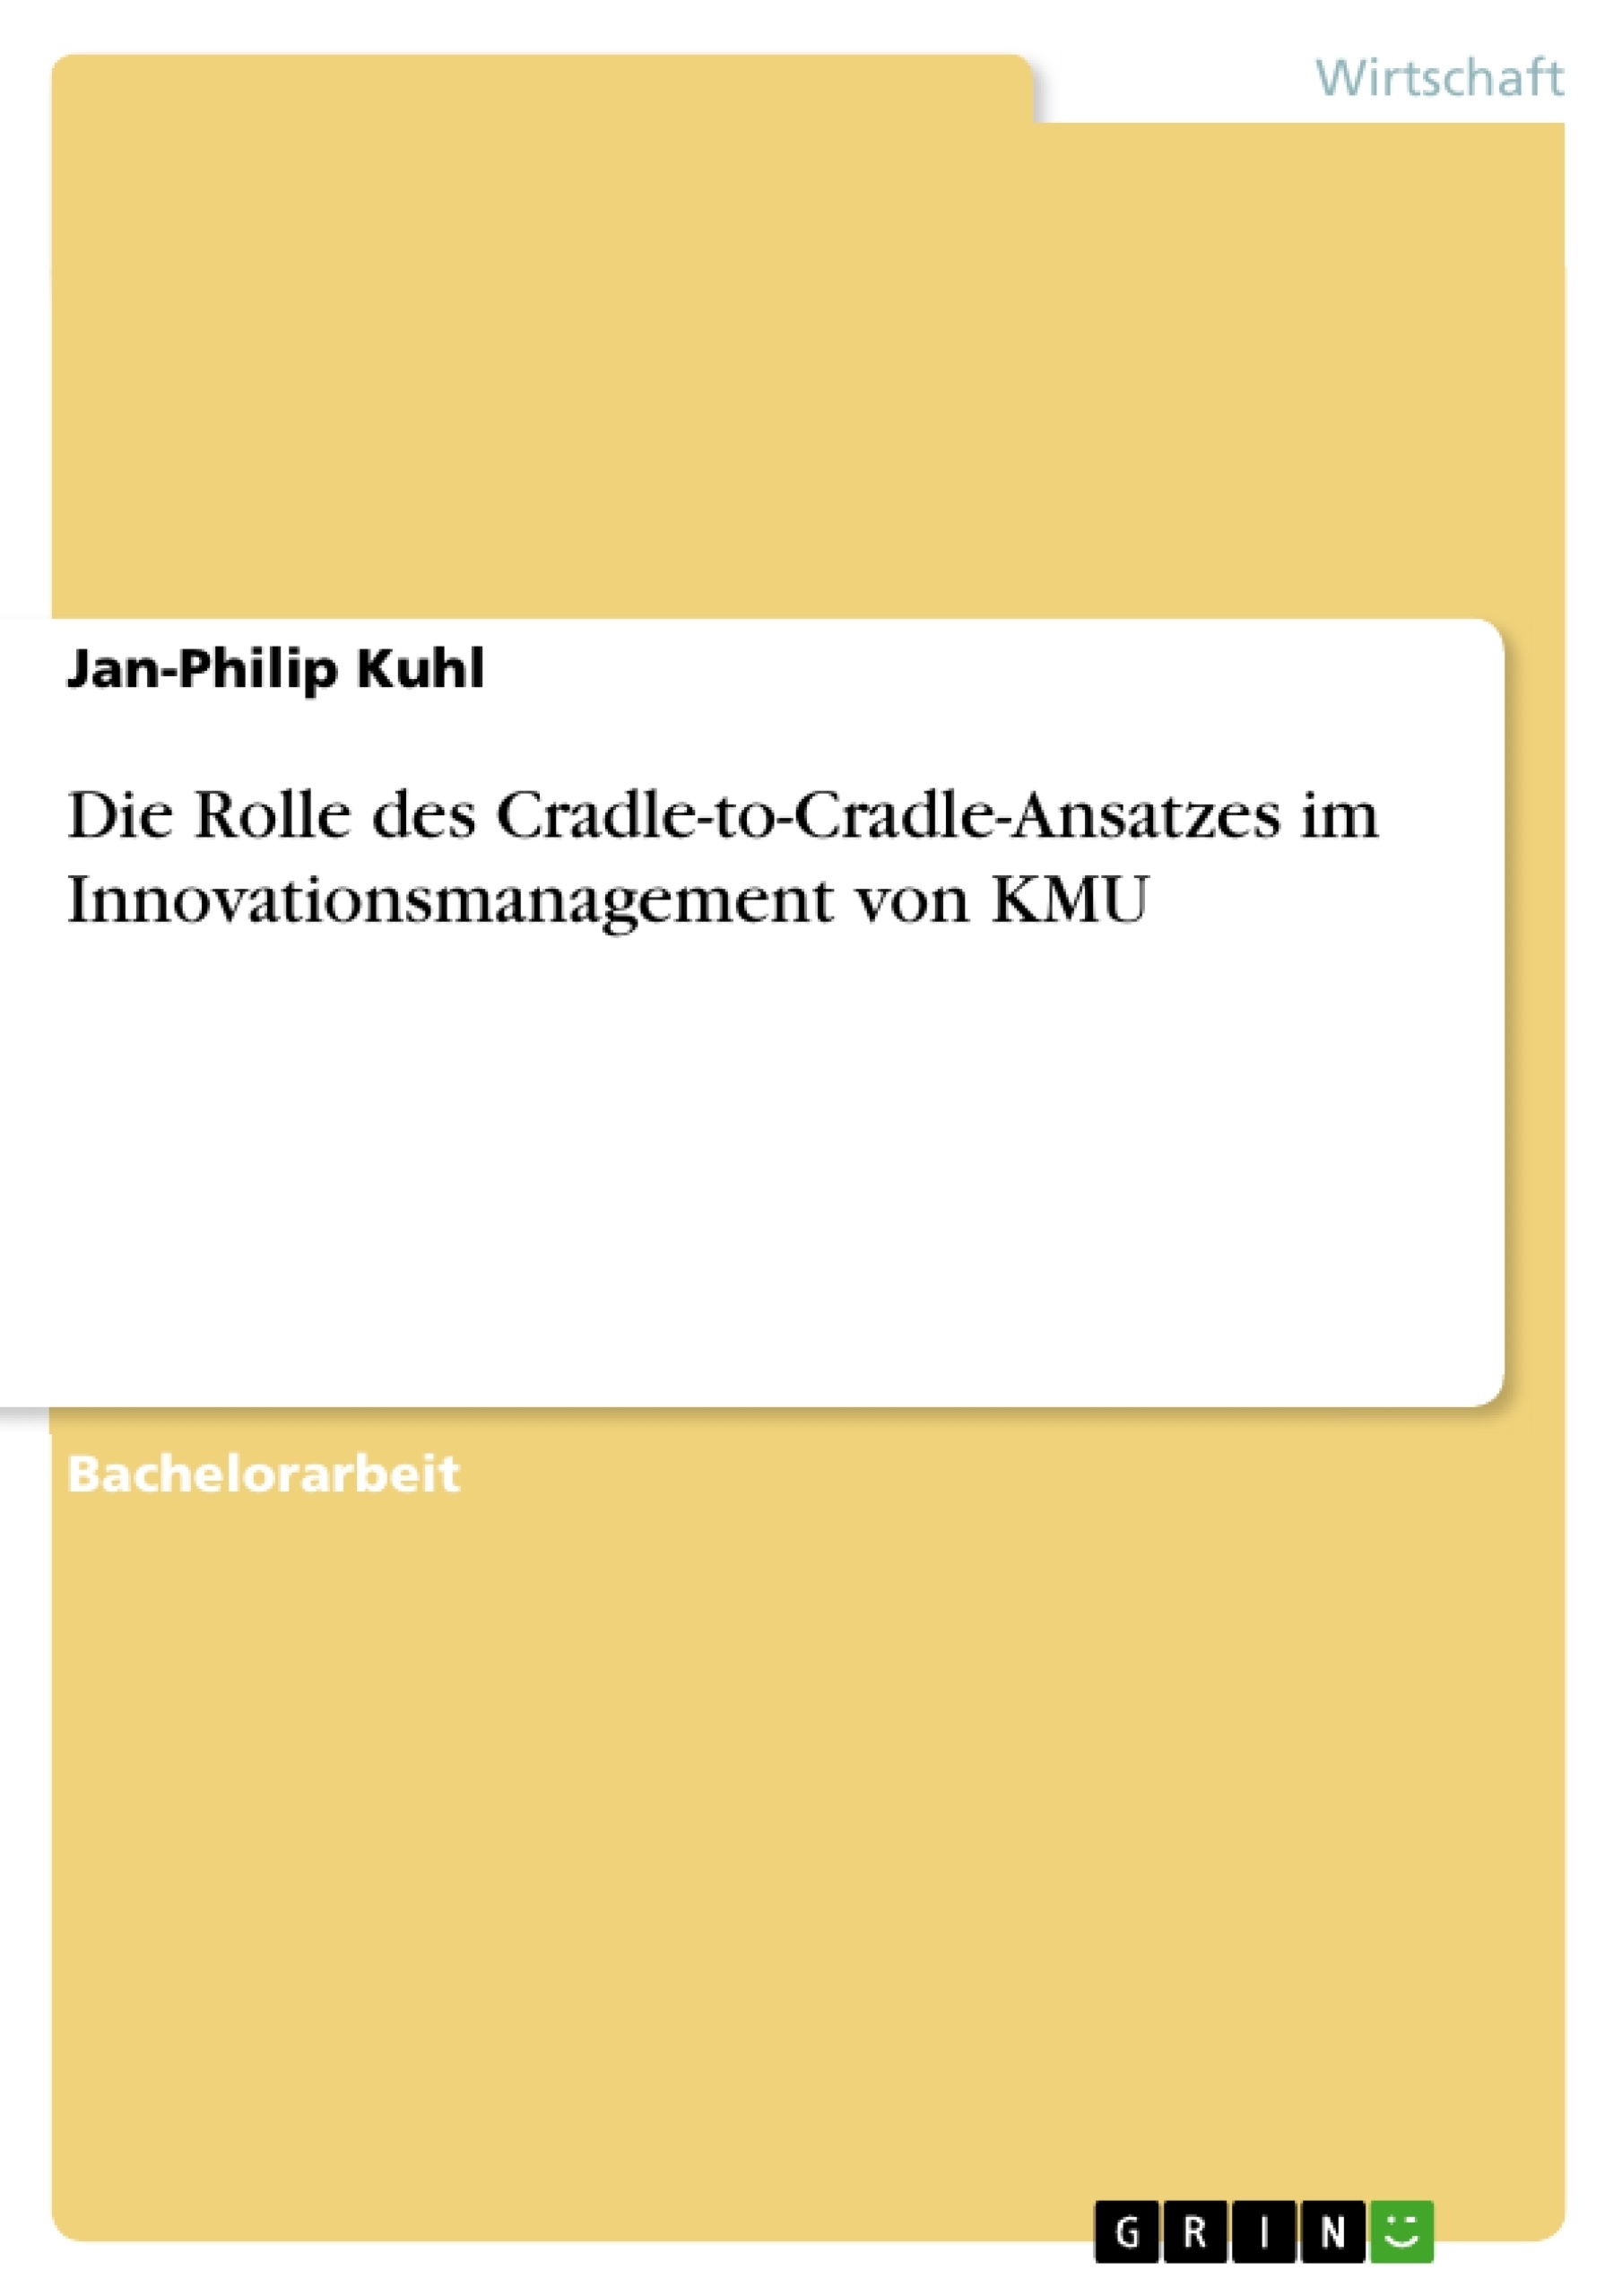 Title: Die Rolle des Cradle-to-Cradle-Ansatzes im Innovationsmanagement von KMU